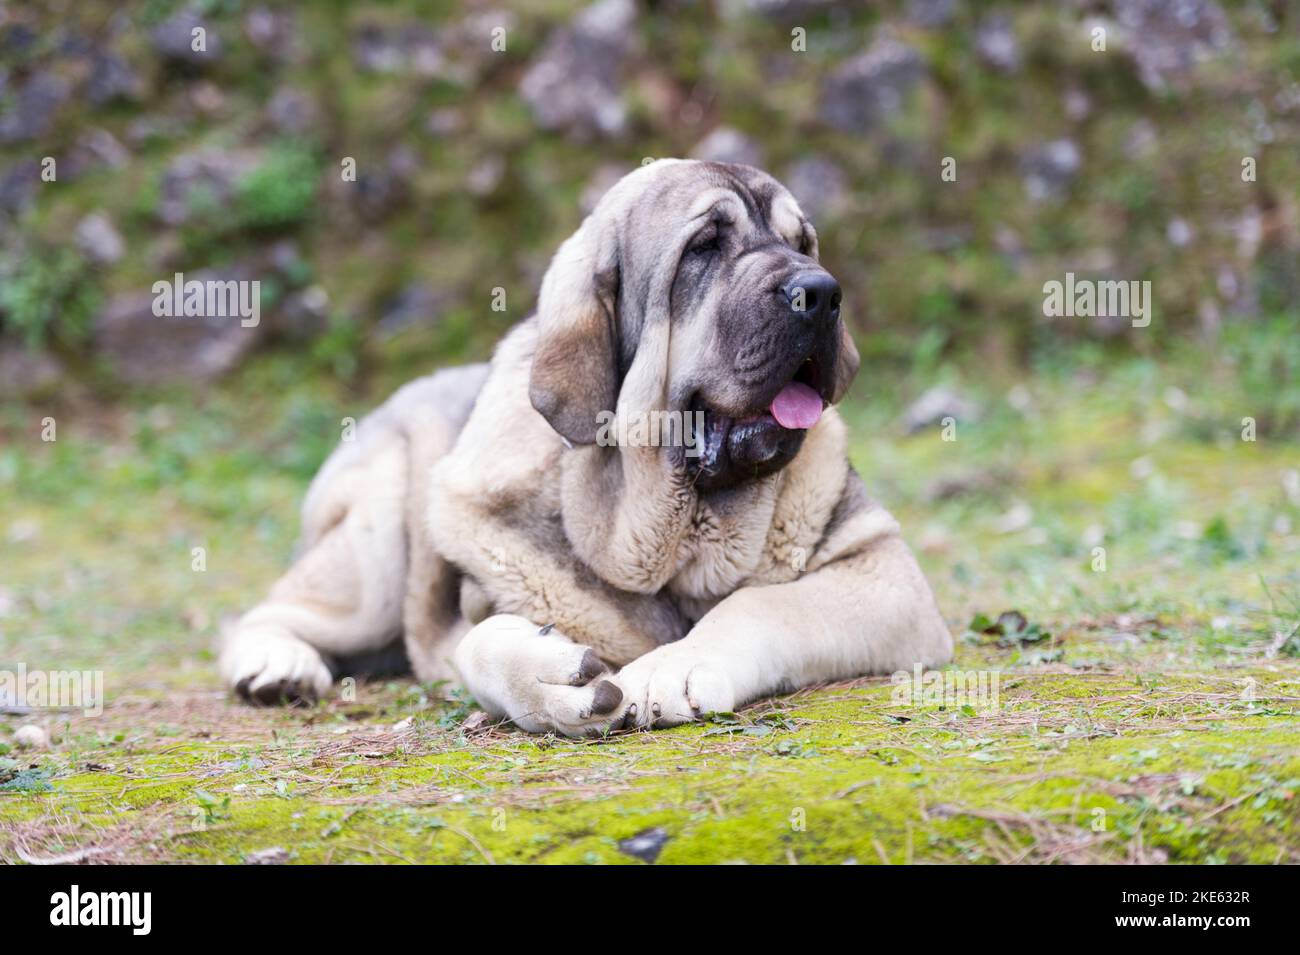 Spanischer Mastiff reinrassig Hund mit jungen Fellfarbe auf dem Gras stehen Stockfoto